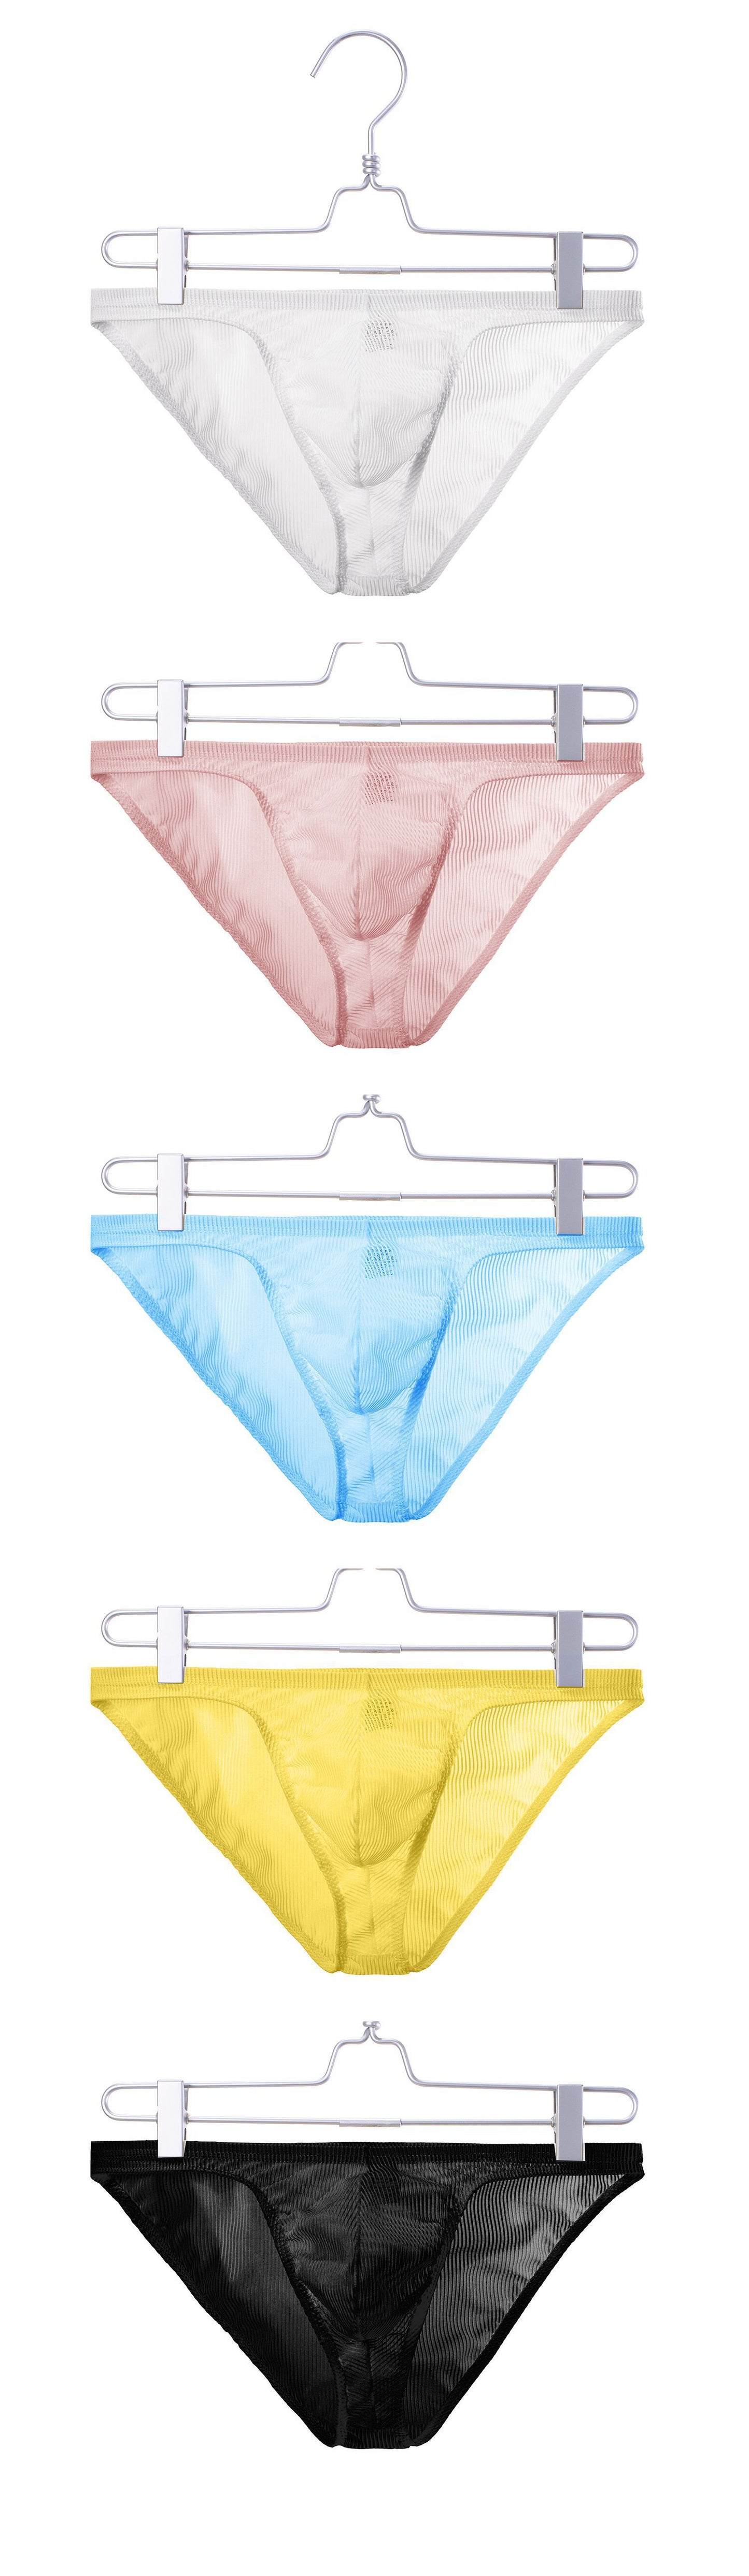 Thong Temptation Sexy Men's Underwear